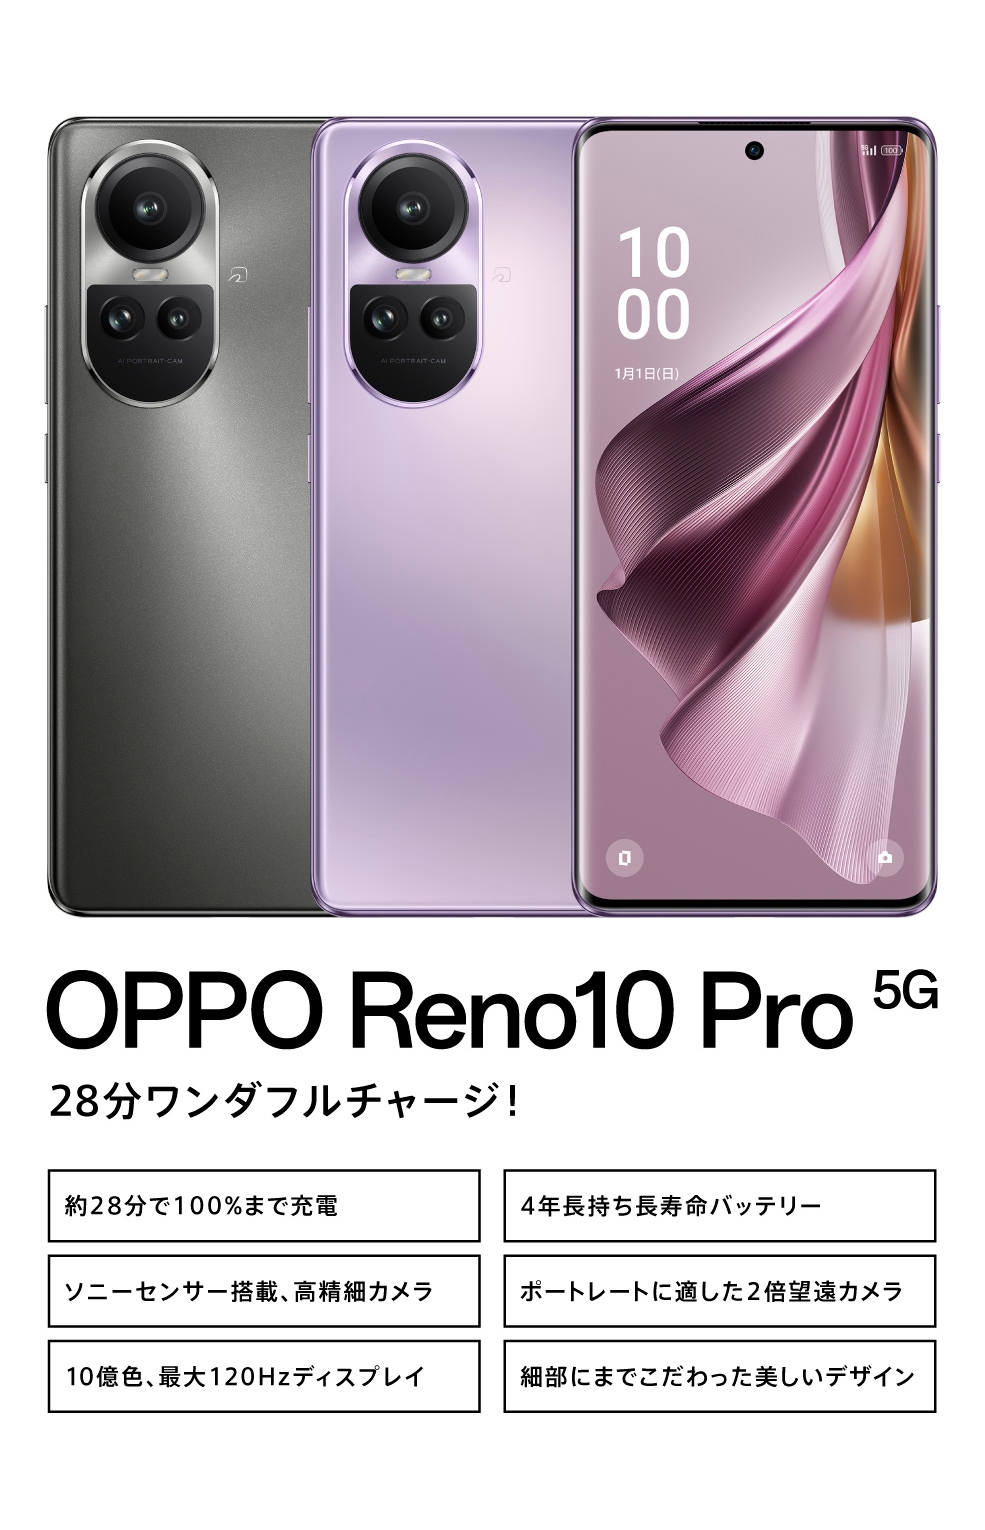 OPPO Reno10 Pro 5G 【SIMFREE】 | スマートフォン | OPPO公式 ...